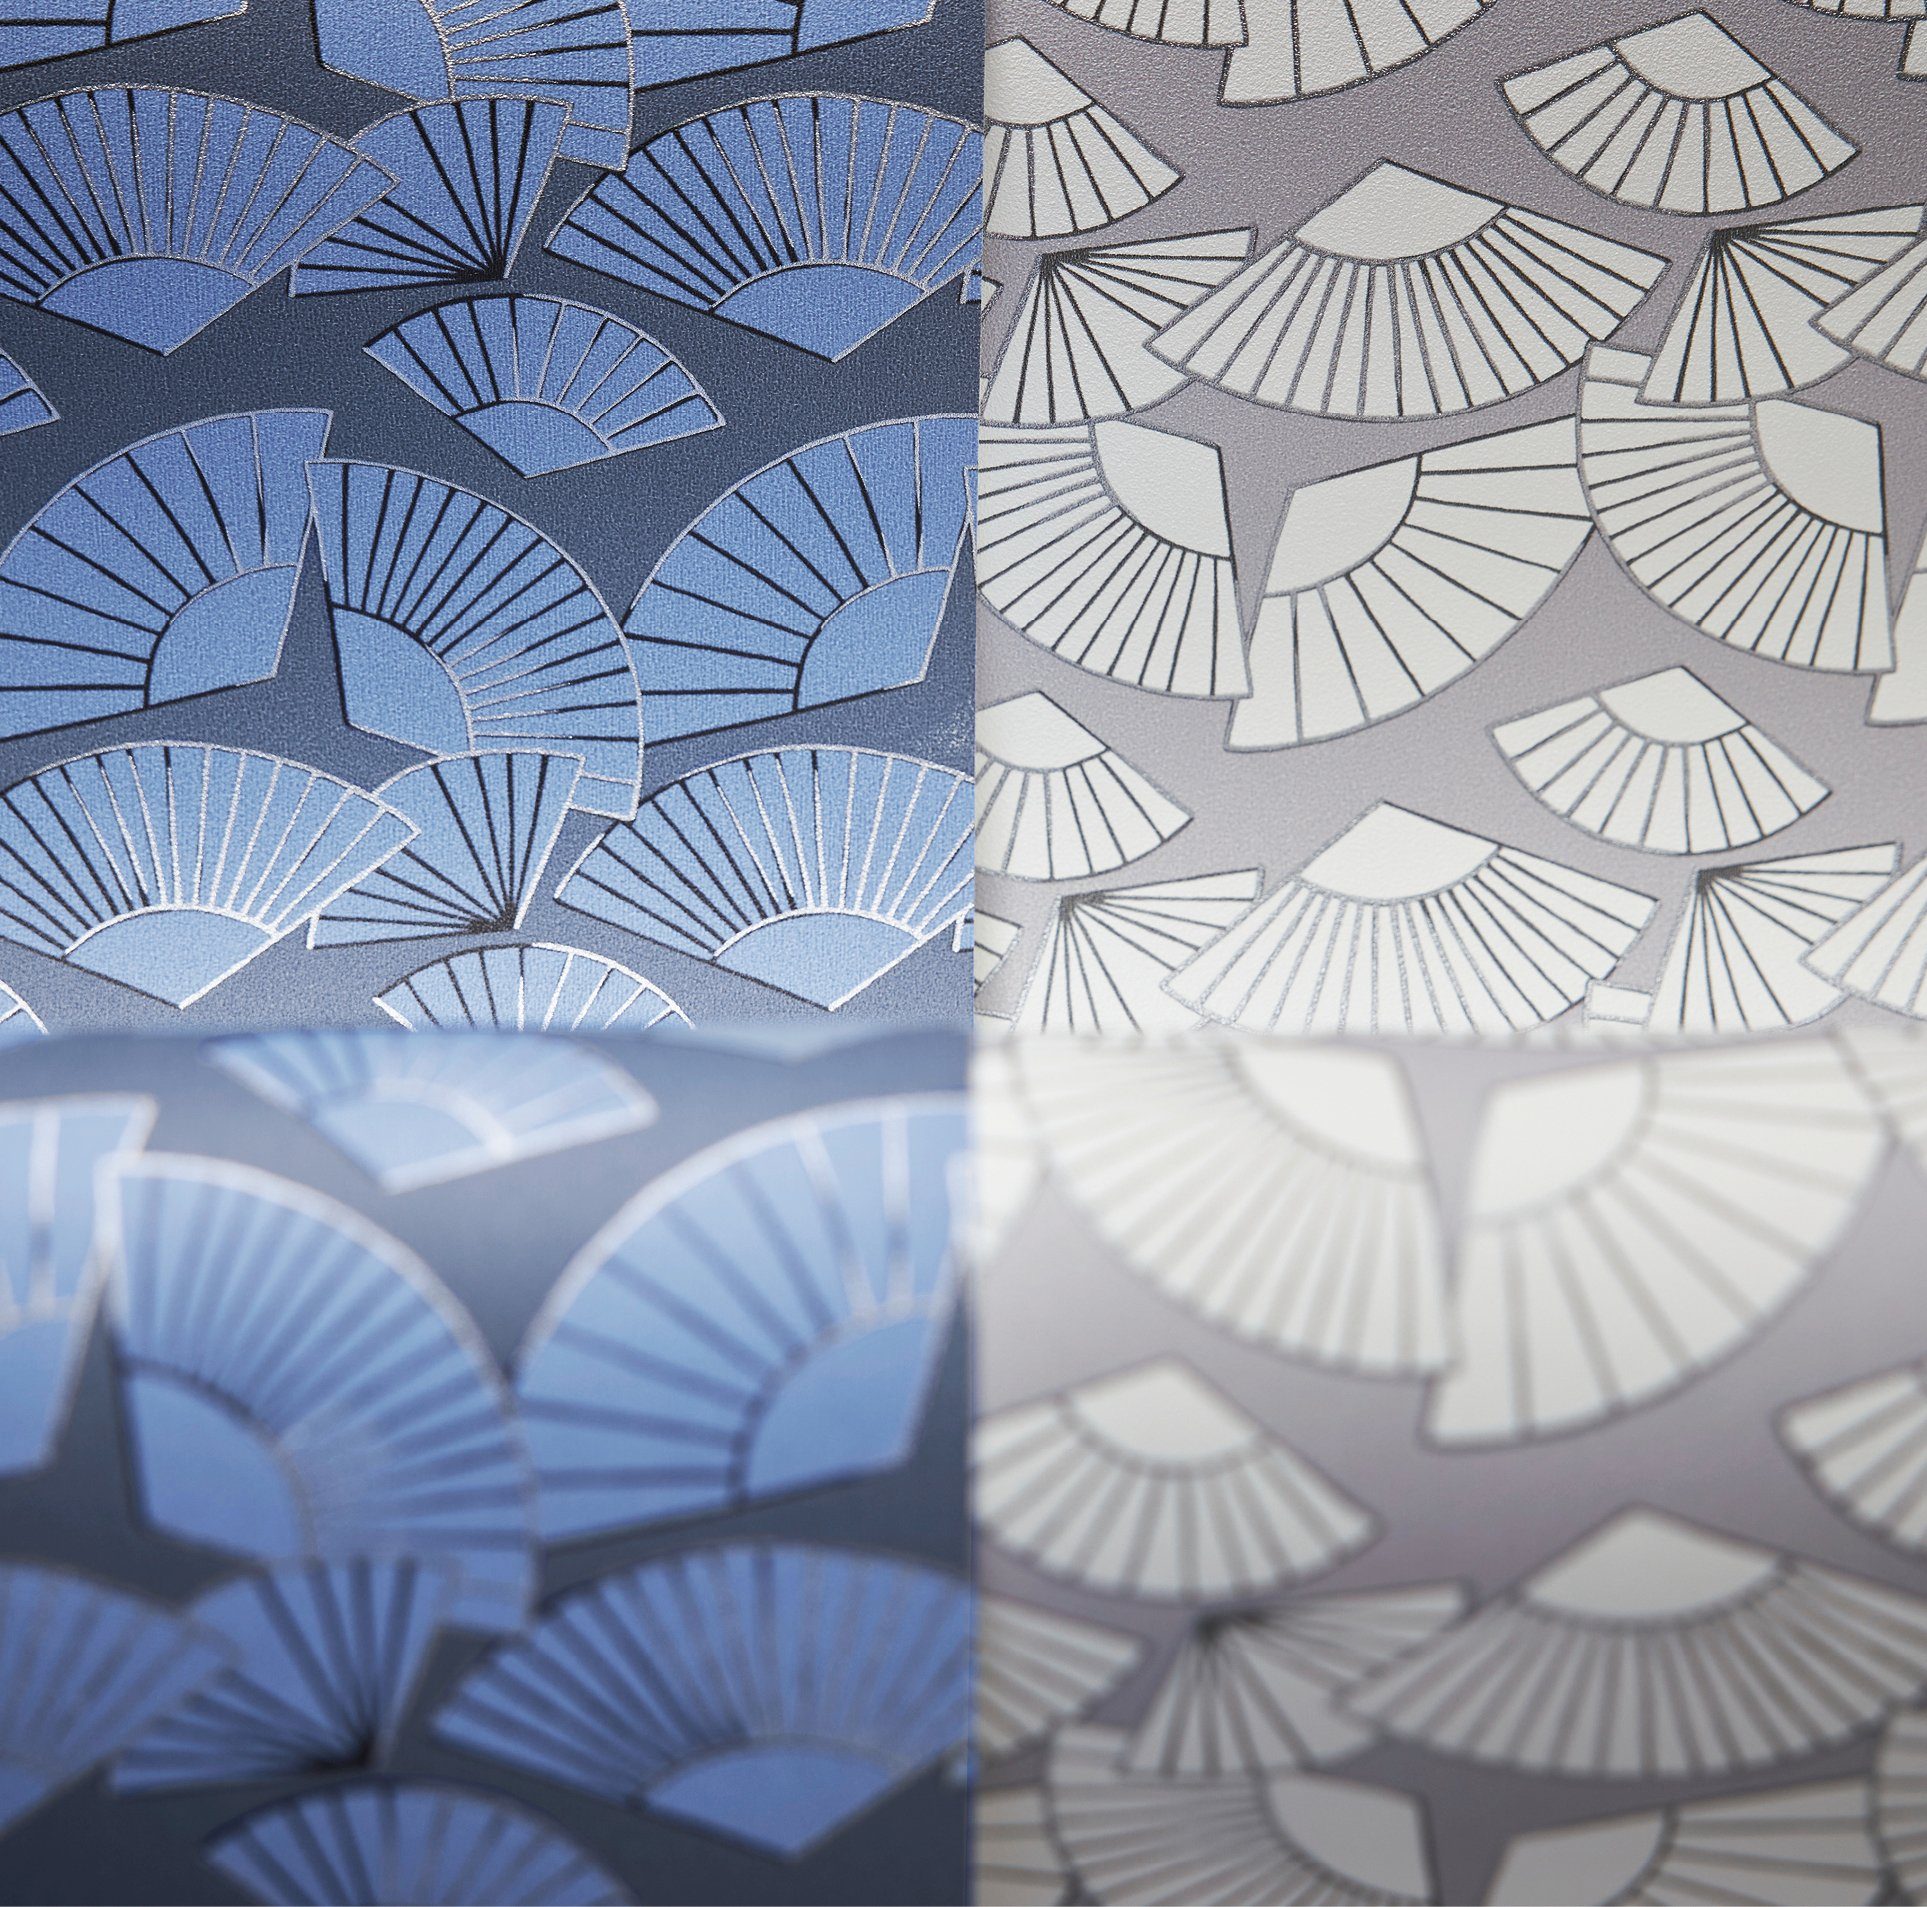 Metallic Paper Vliestapete Fan, Tapete blau/weiß/metallic Designer Geometrische Architects